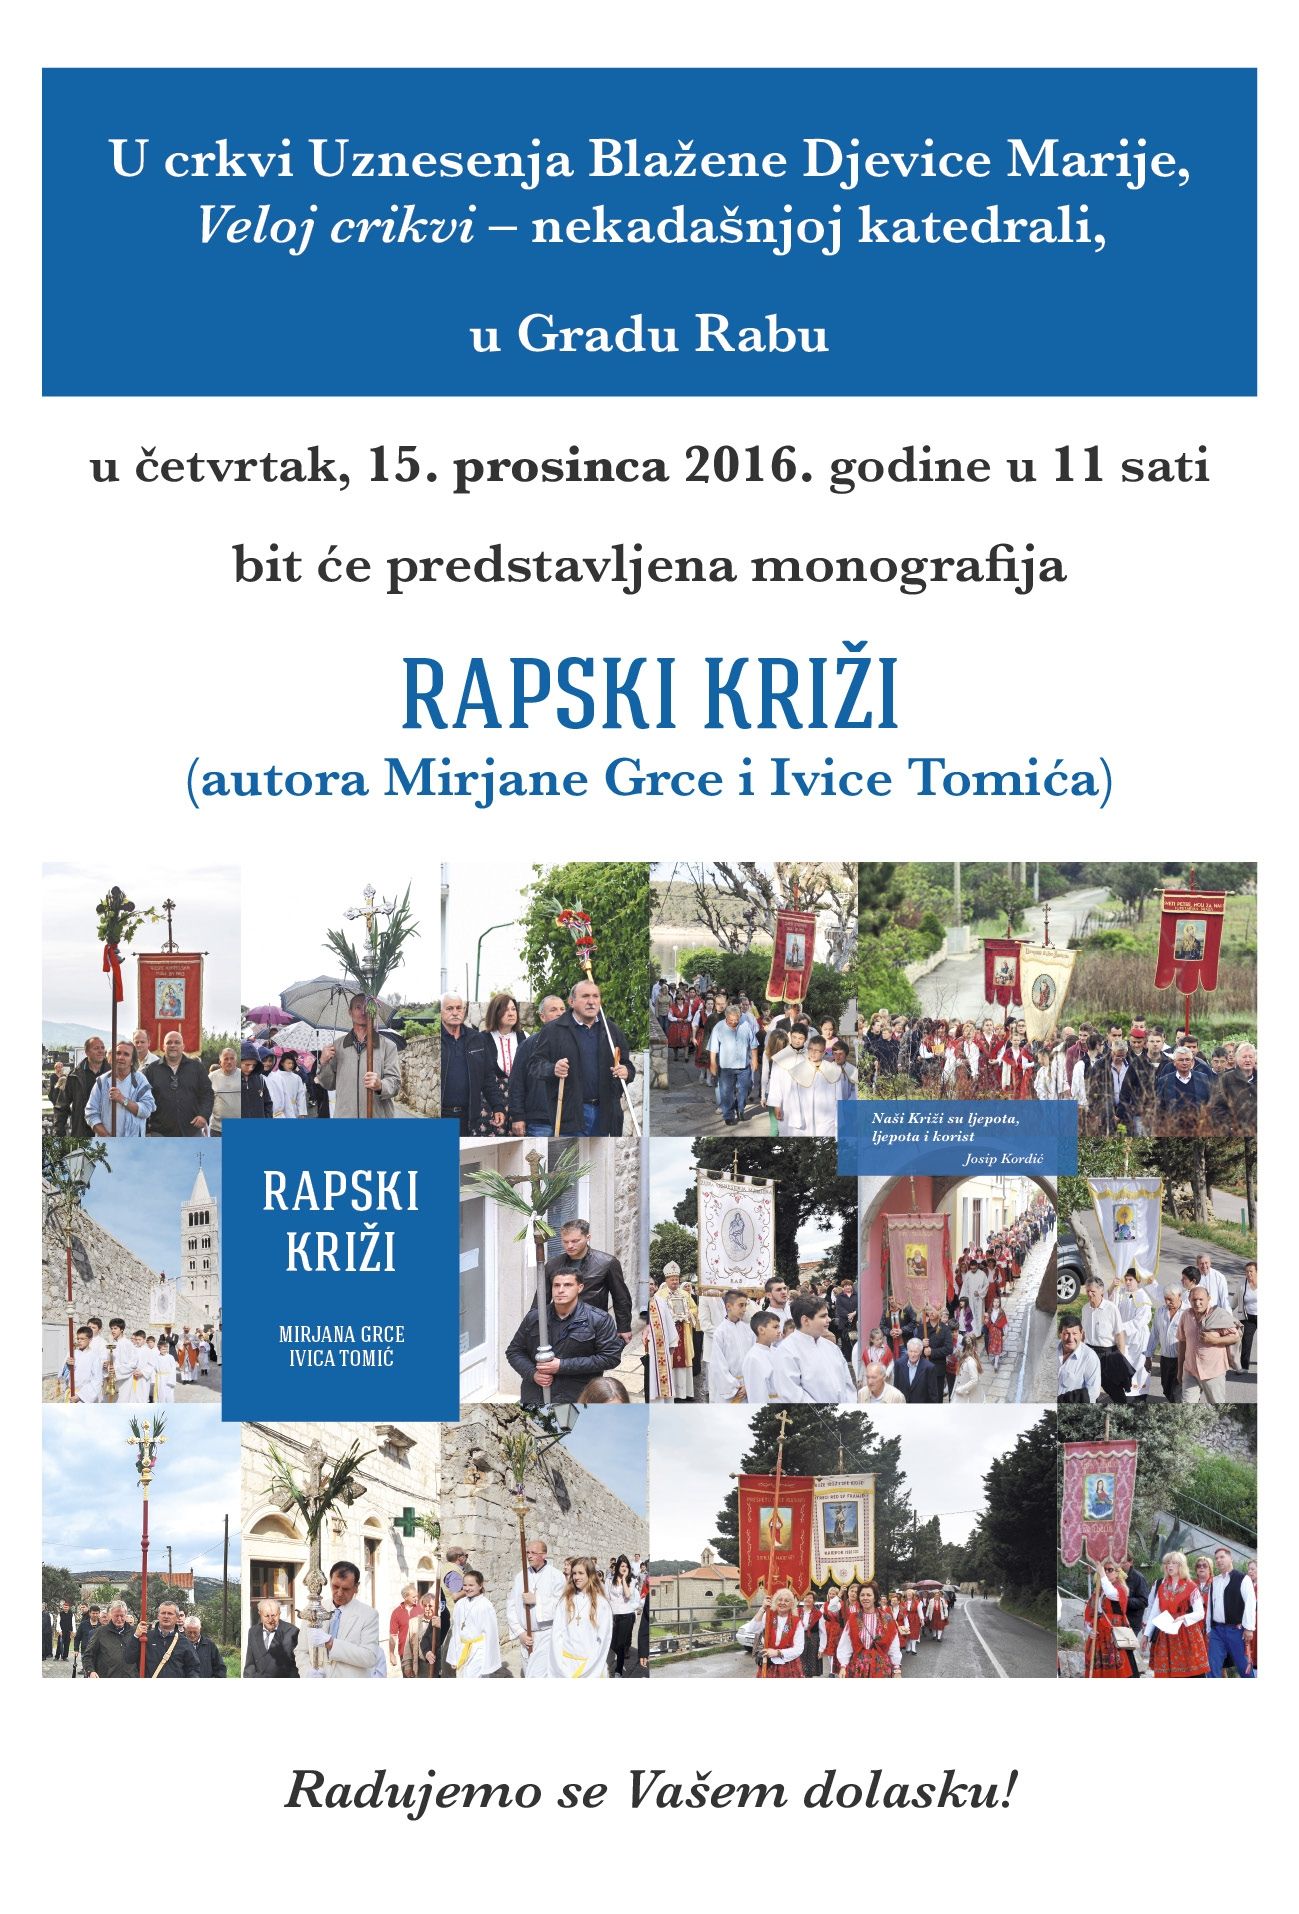 Predstavljanje monografije »Rapski Križi« / Rab, crkva UBD Marije – rapska katedrala, 15. 12. ’16. u 11 sati